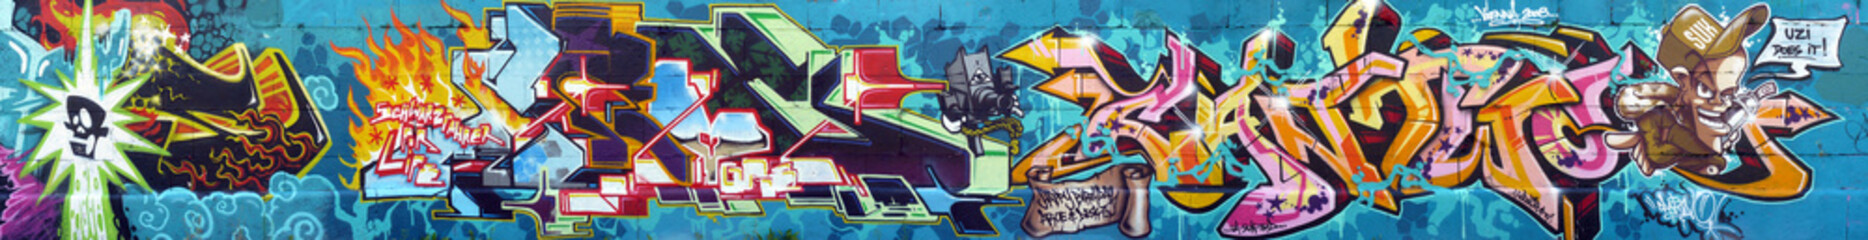 Graffiti large wall